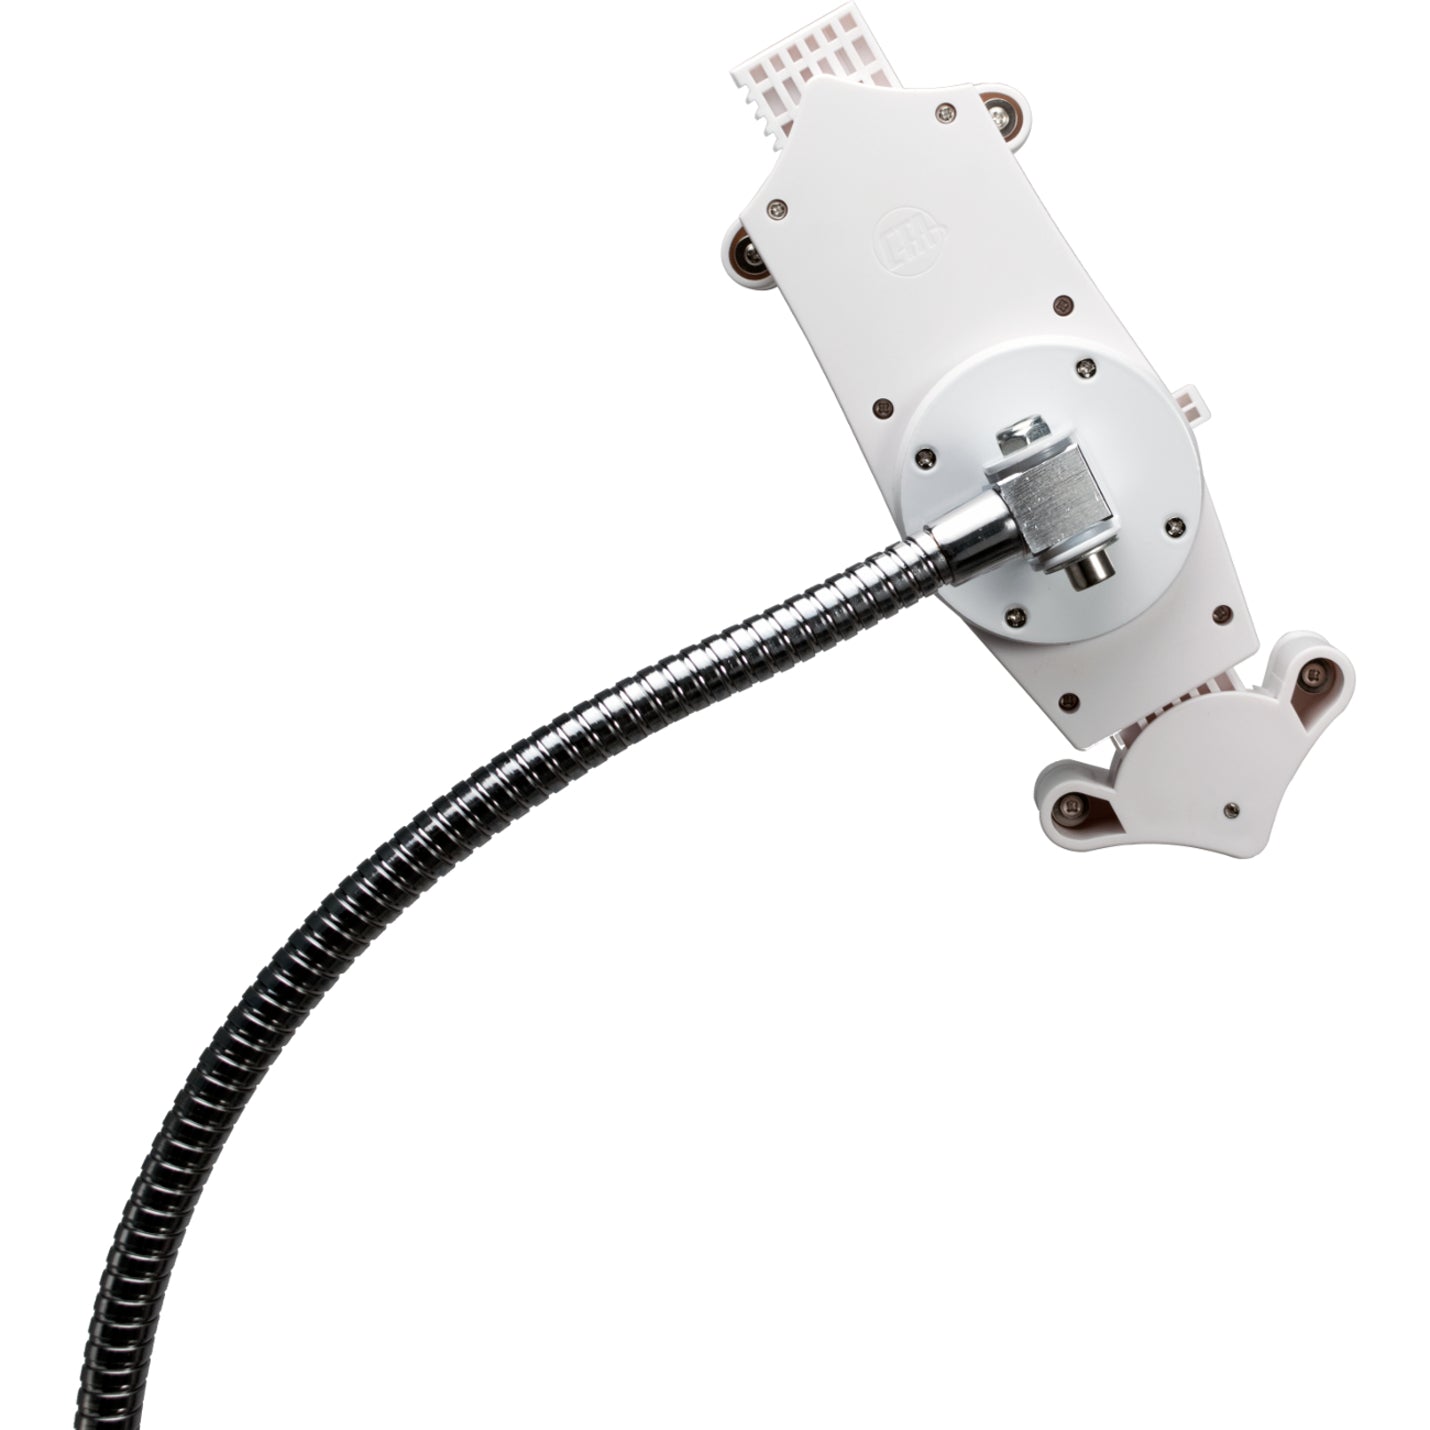 CTA Digital PAD-HFS - Support de sol à col de cygne robuste pour tablettes de 7 à 13 pouces réglable en hauteur rotation à 360° mobilité roulettes pivotantes